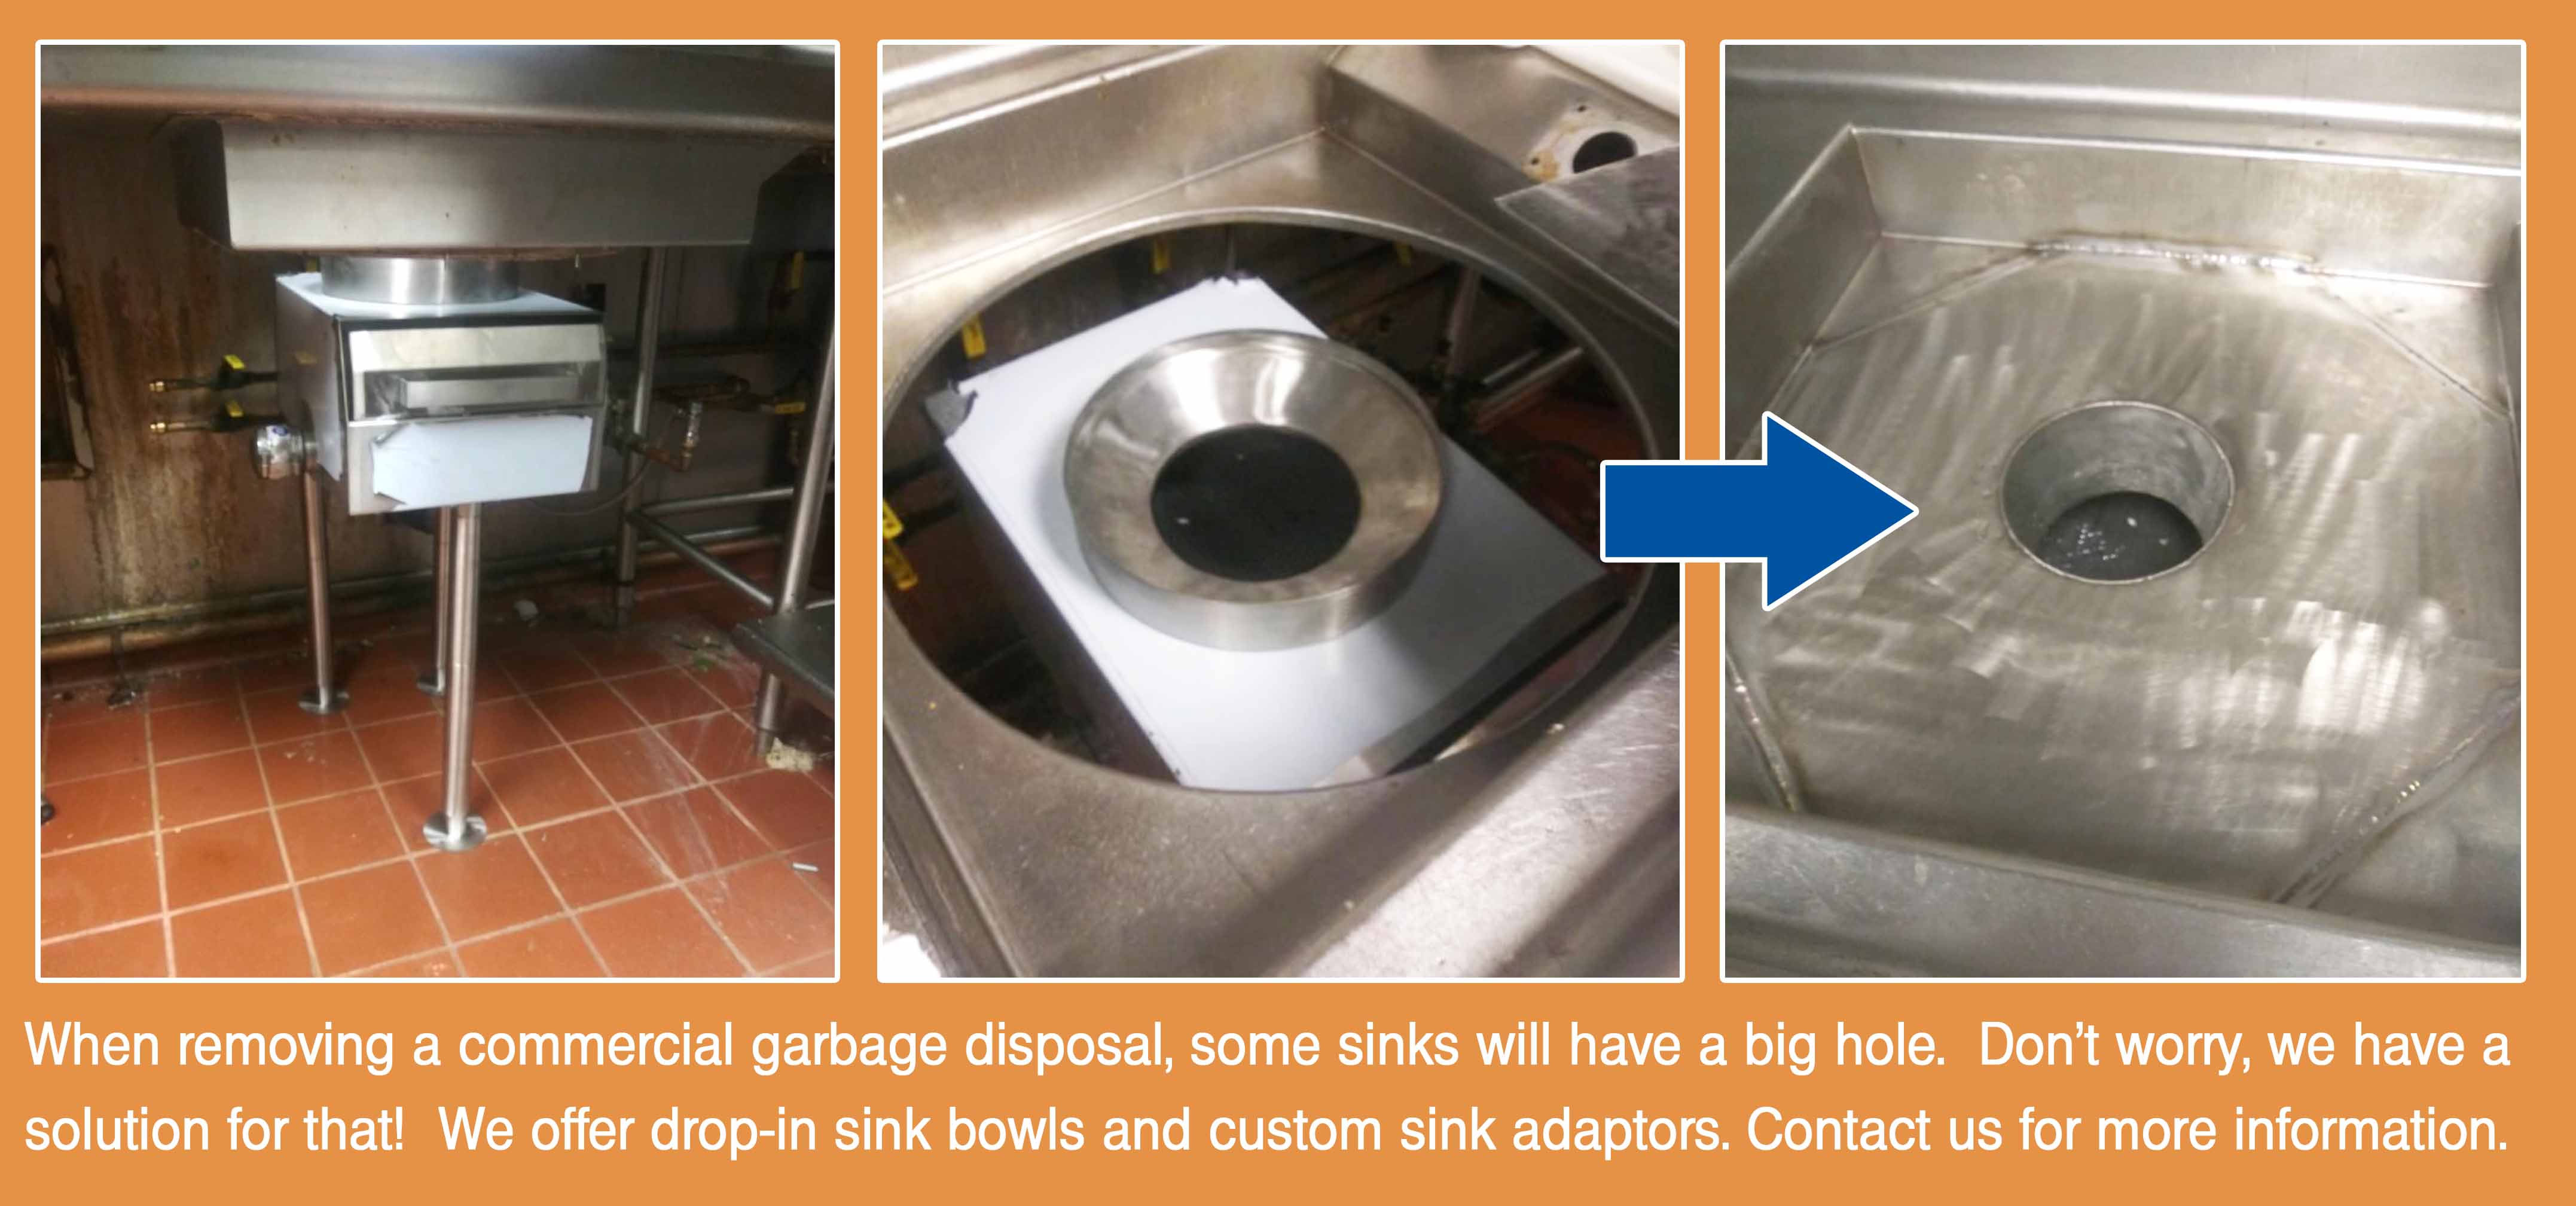 garbage disposal replacement sink bowl adapter